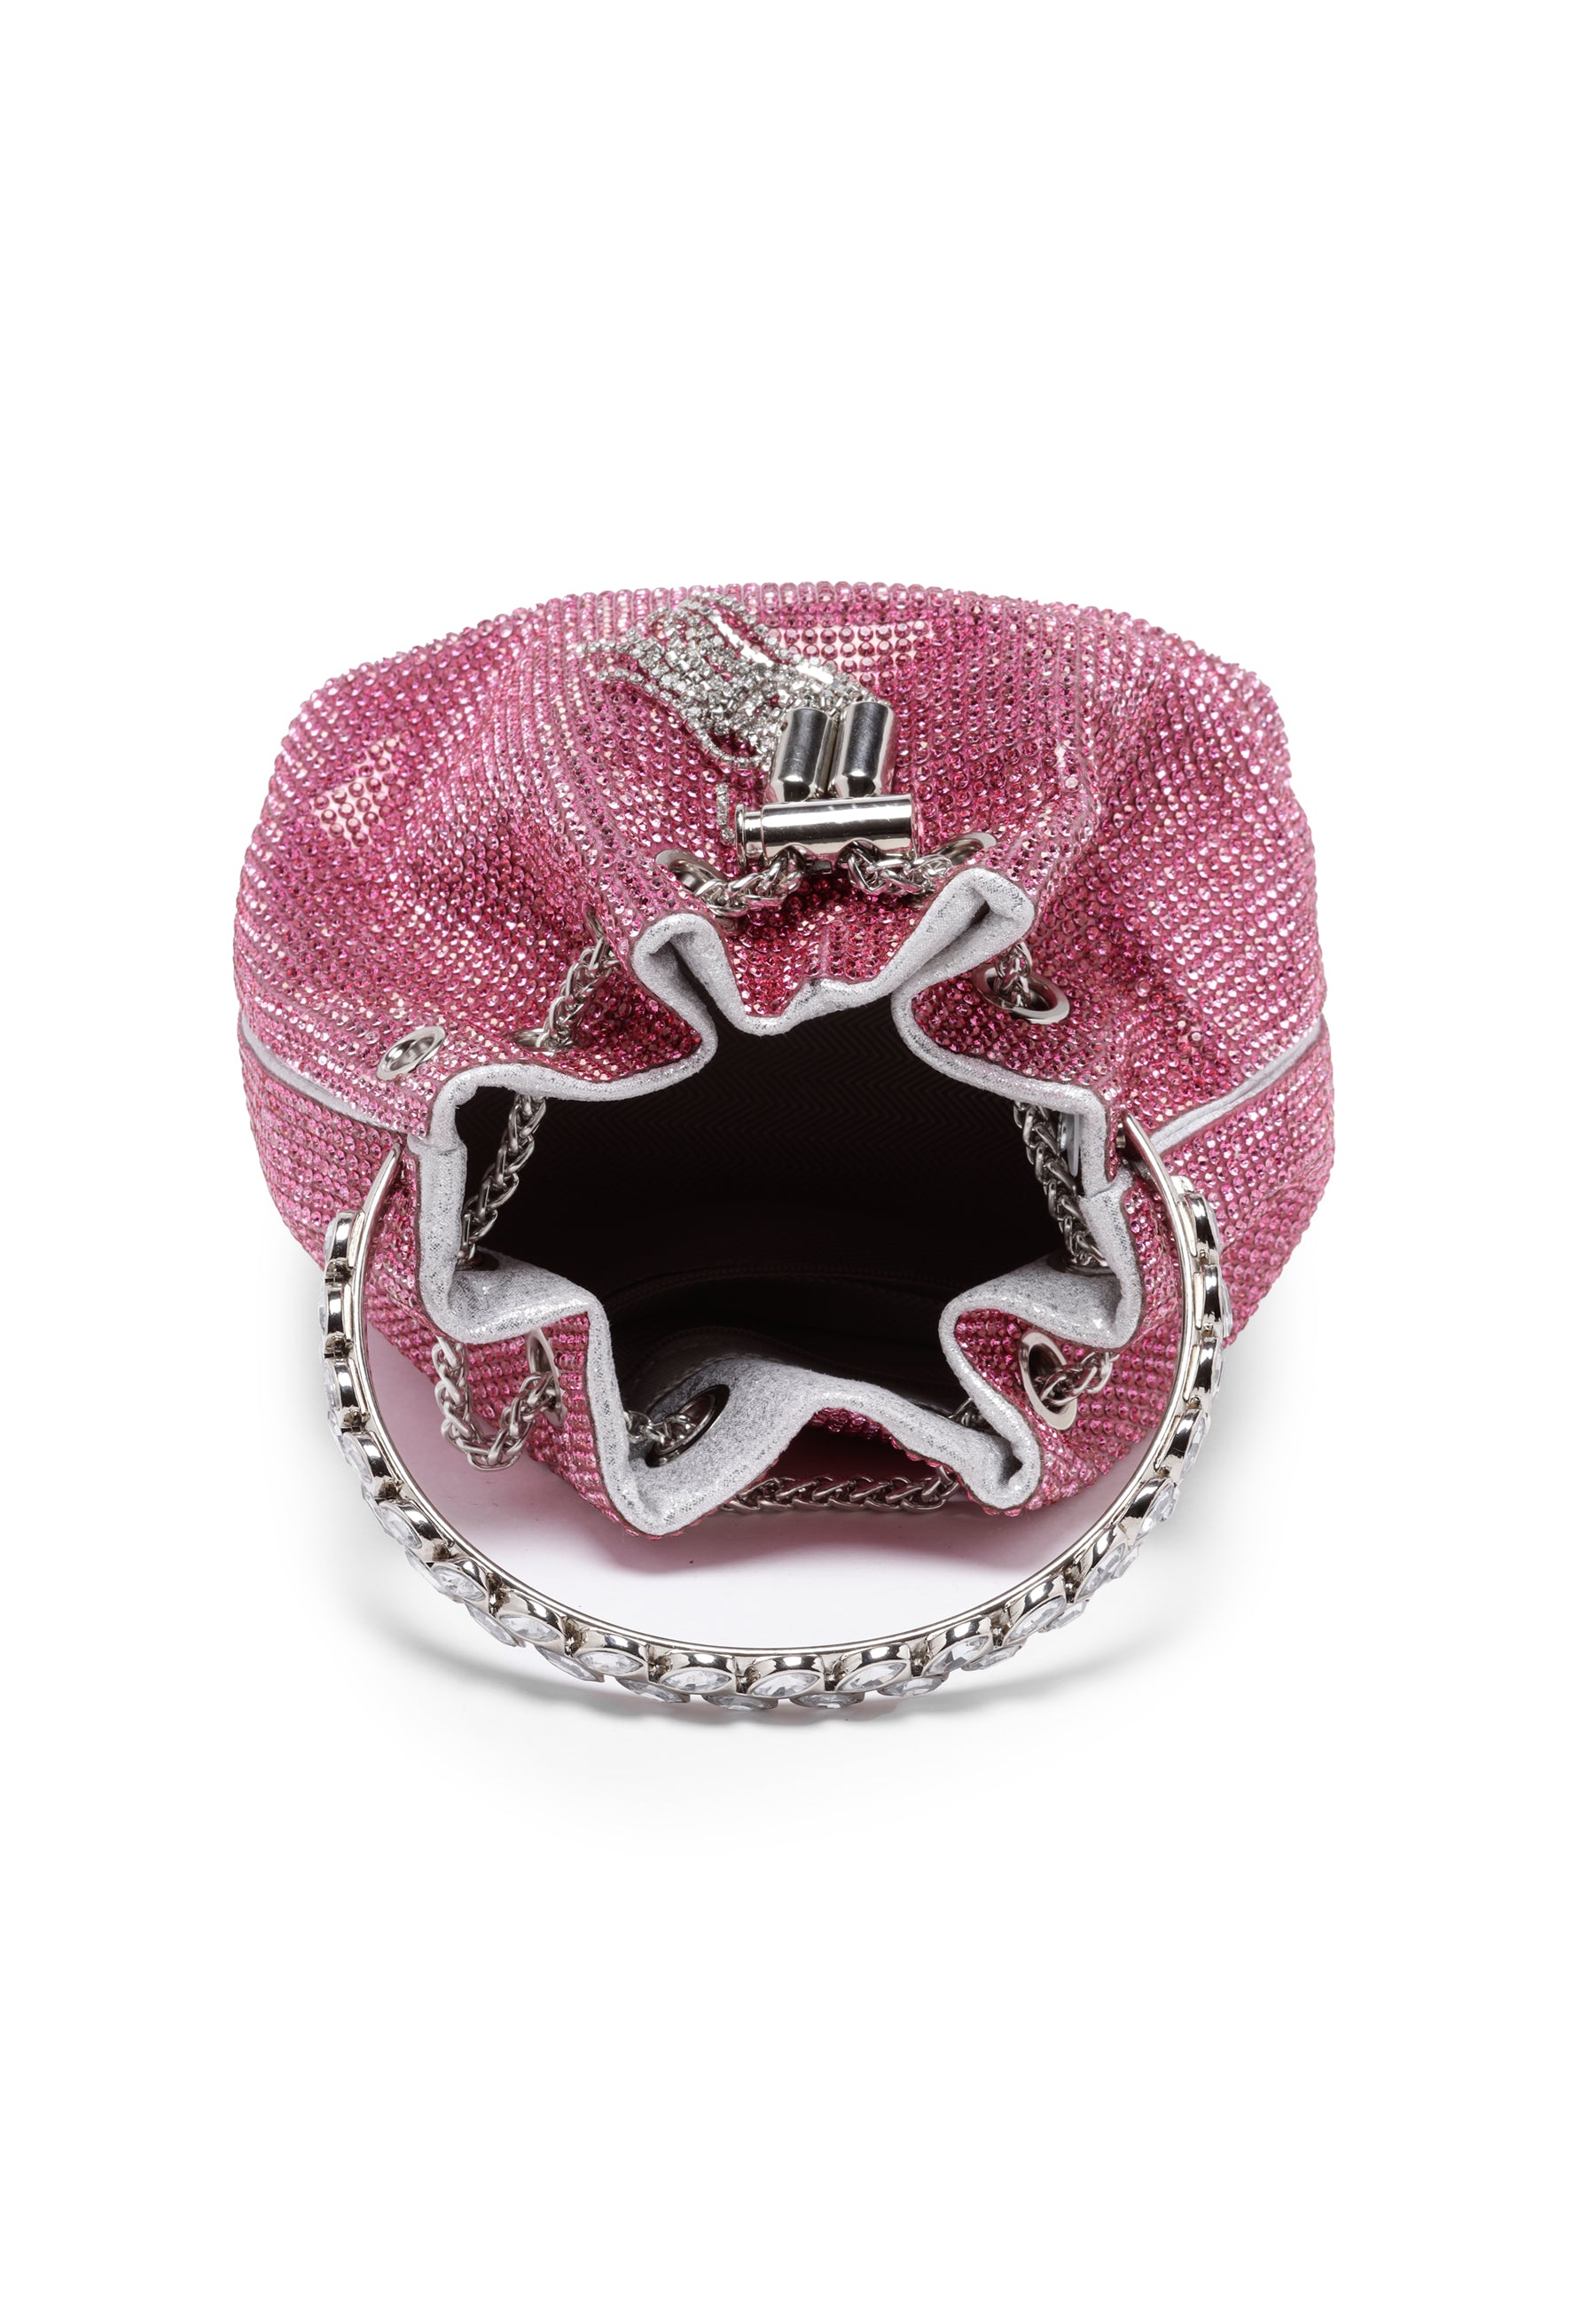 Avant-Garde Paris Pink Crystal Studded Shoulder Clutch